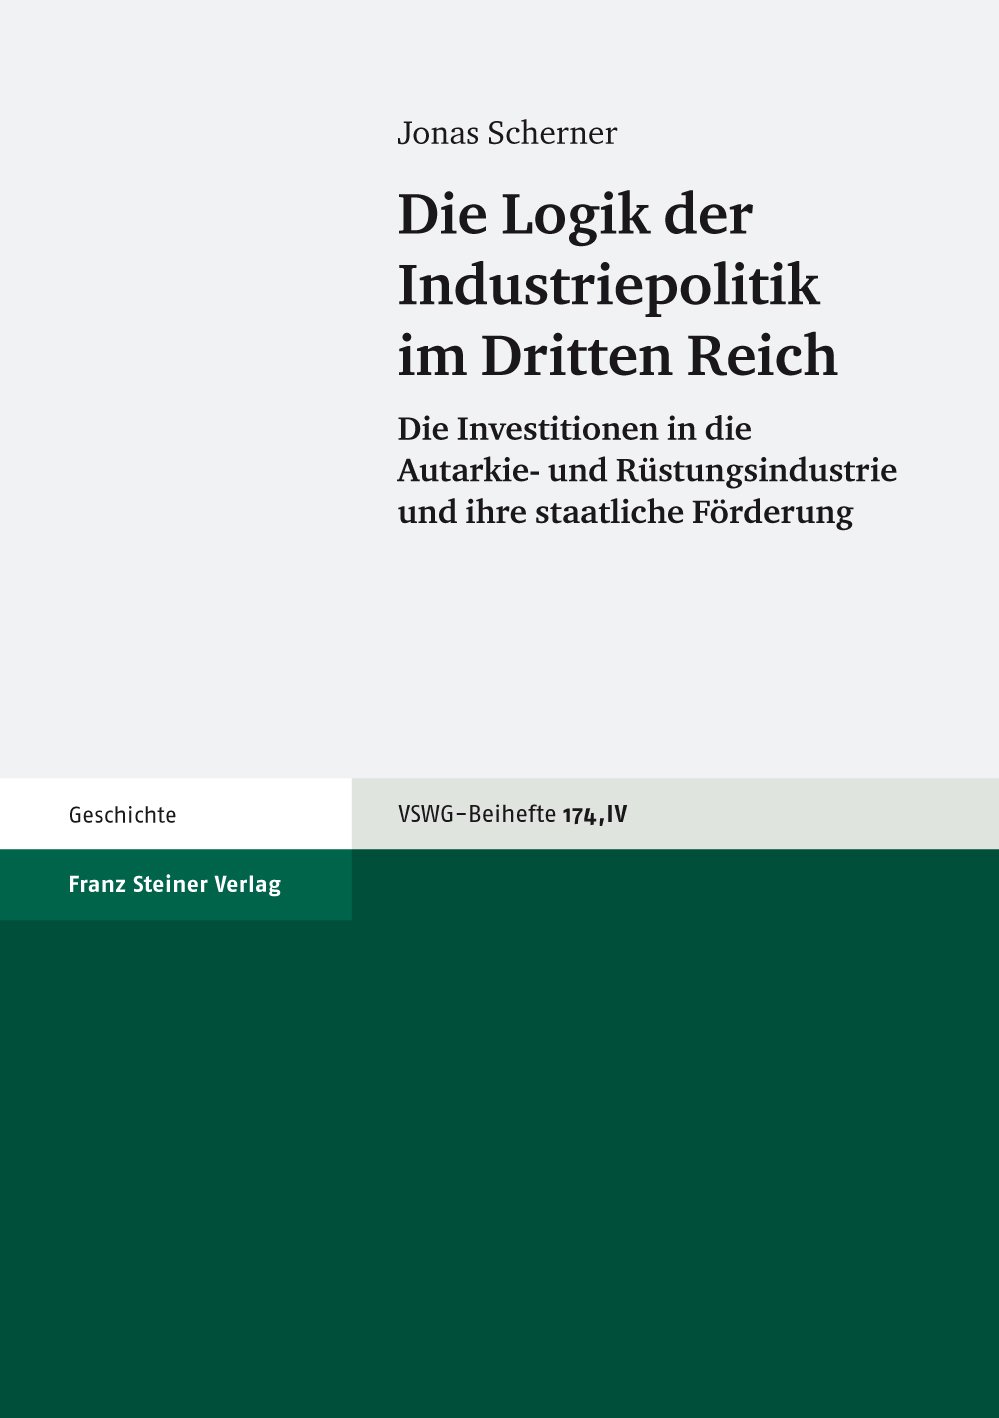 Die Logik der Industriepolitik im Dritten Reich